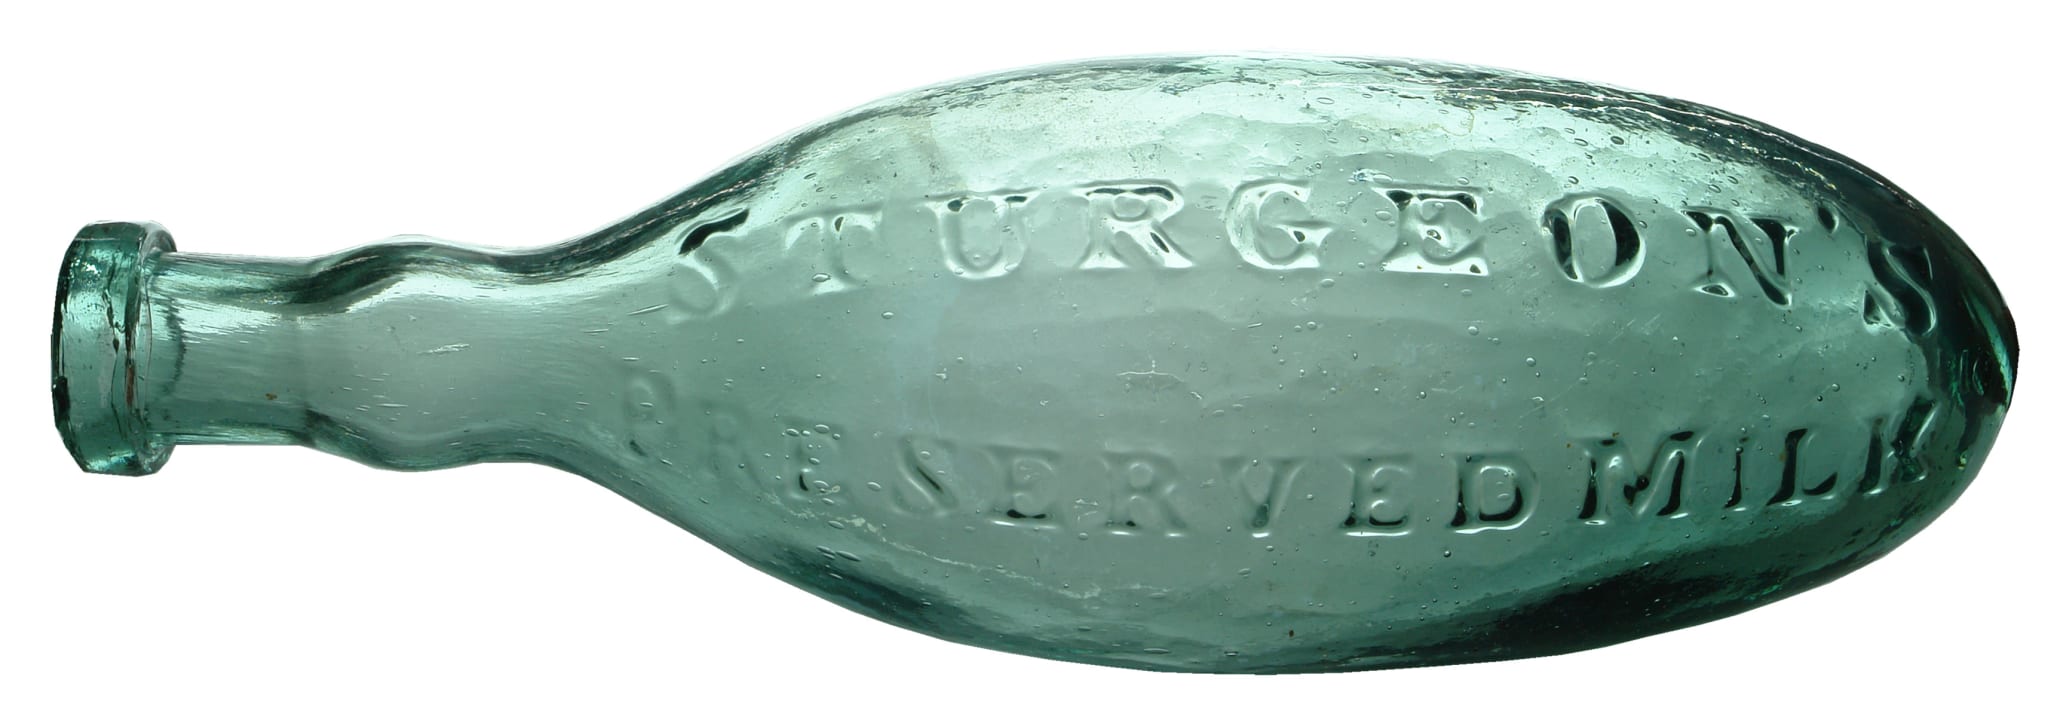 Sturgeon's Preserved Milk Antique Torpedo Bottle